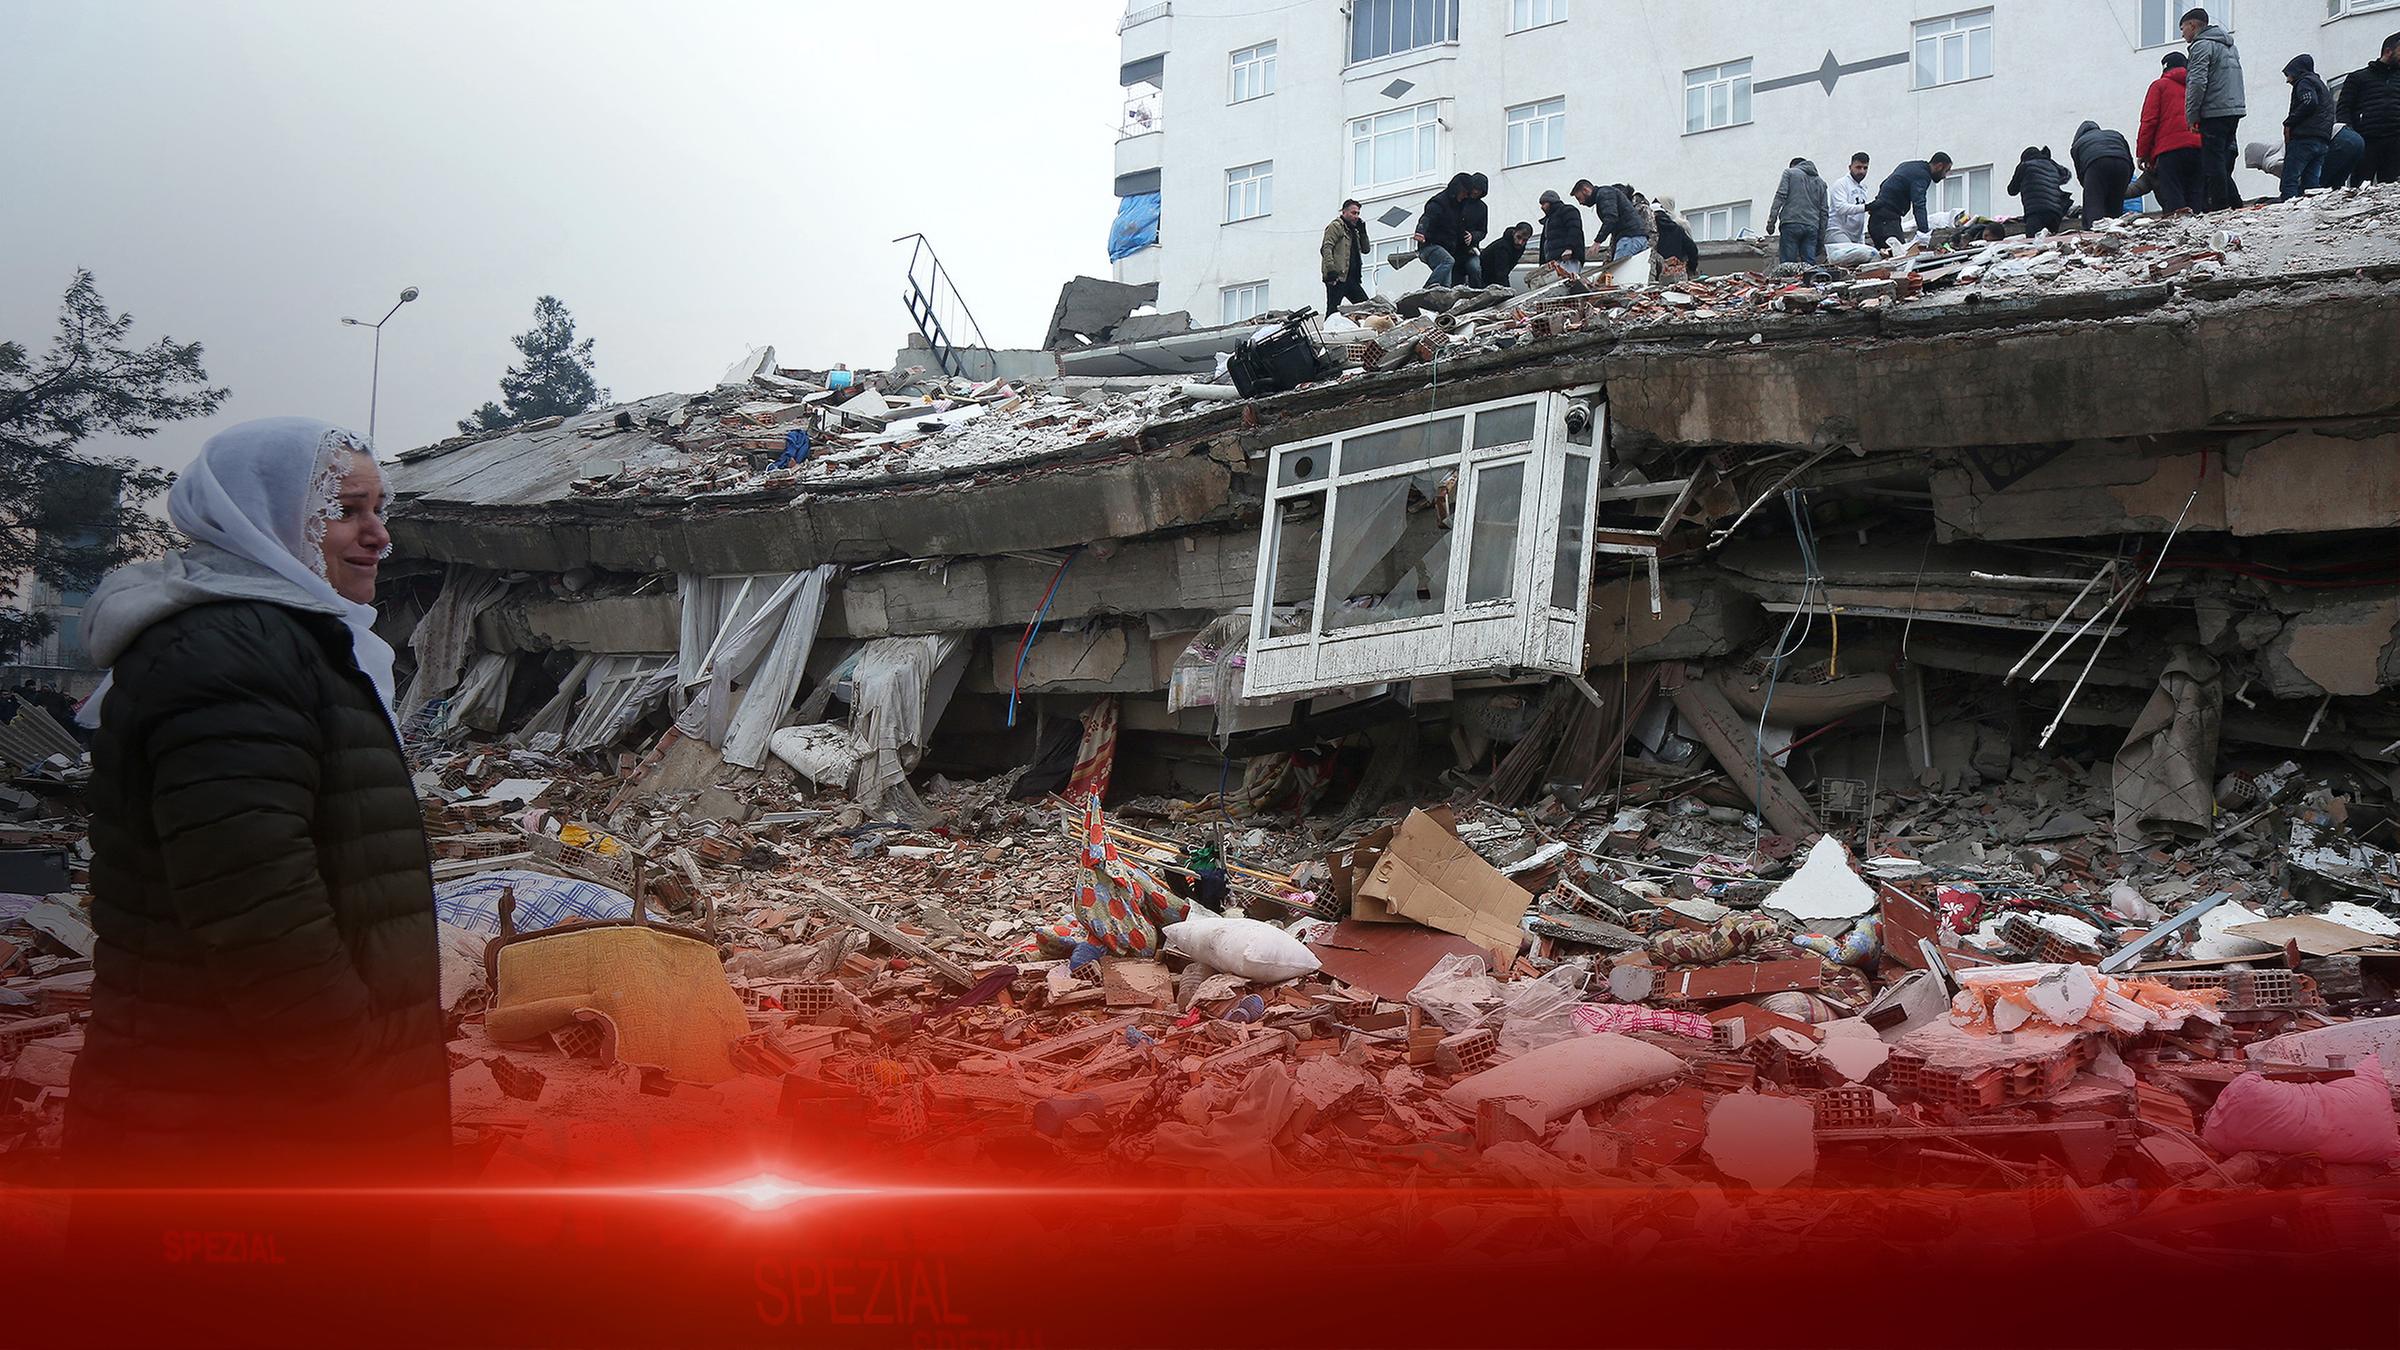 ZDFspezial: Erdbeben in der Türkei